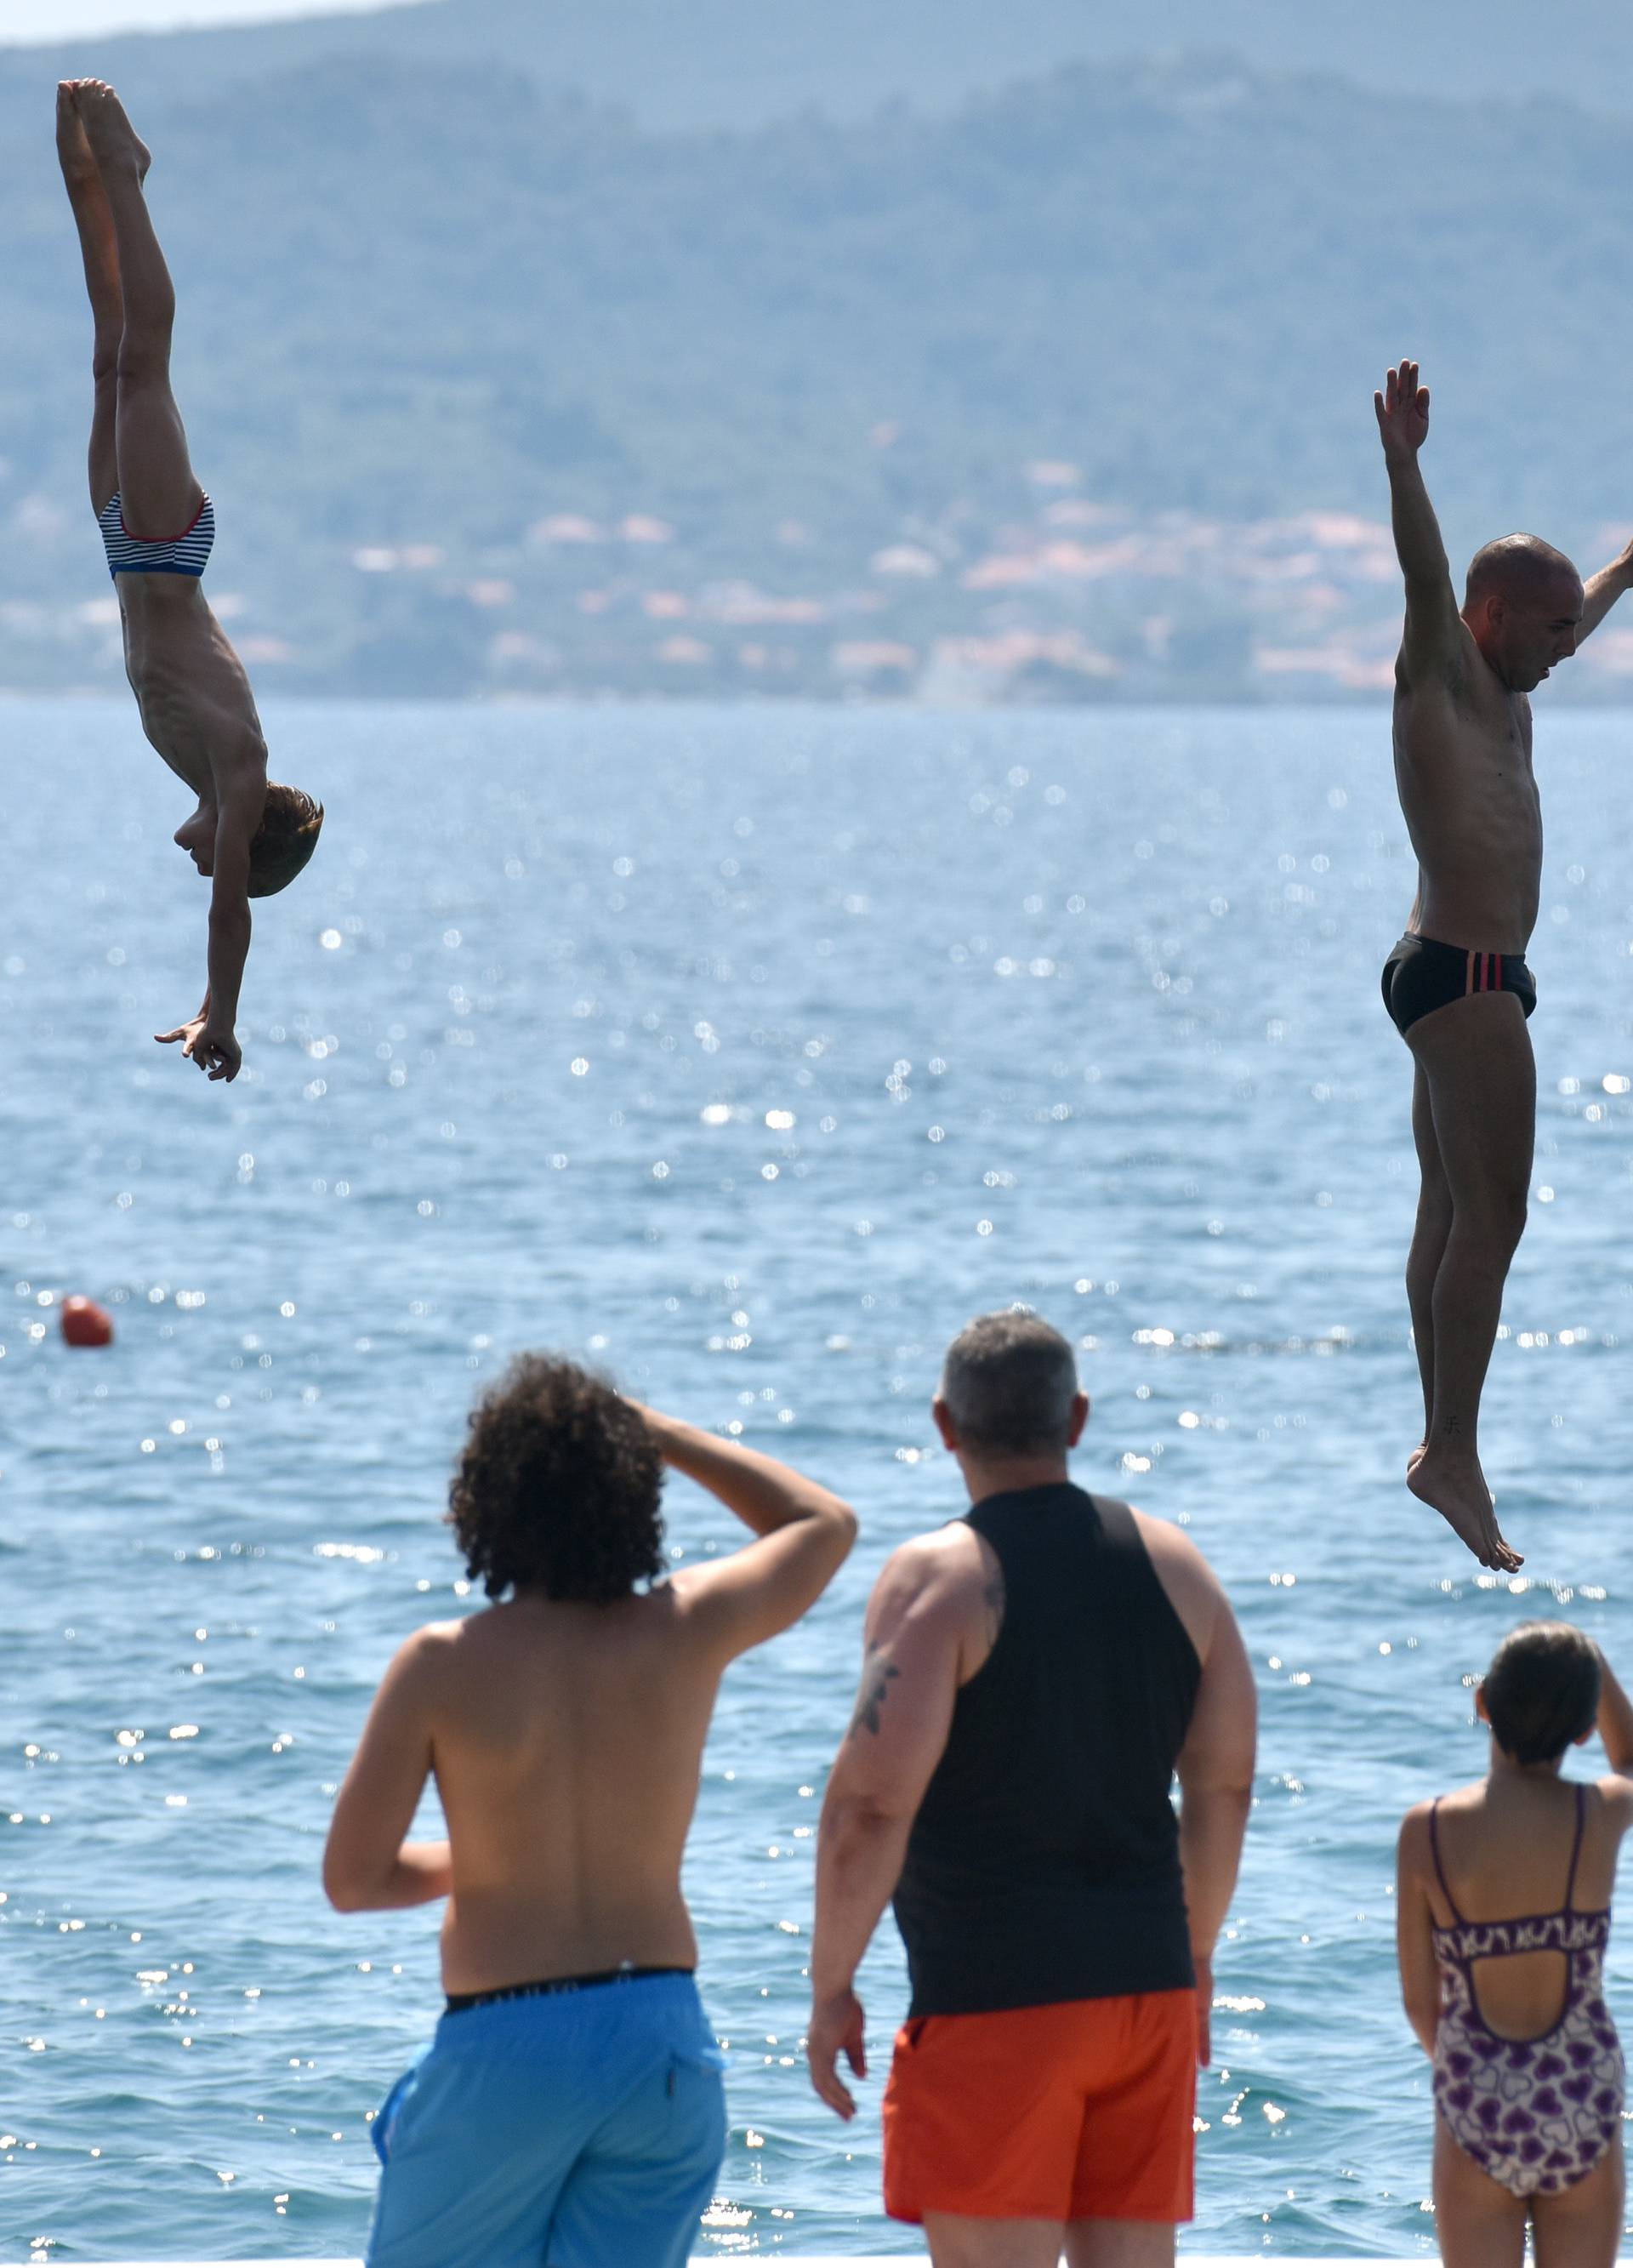 Suludo: Hrabri Zadranin skočio u more s visine od 16 metara